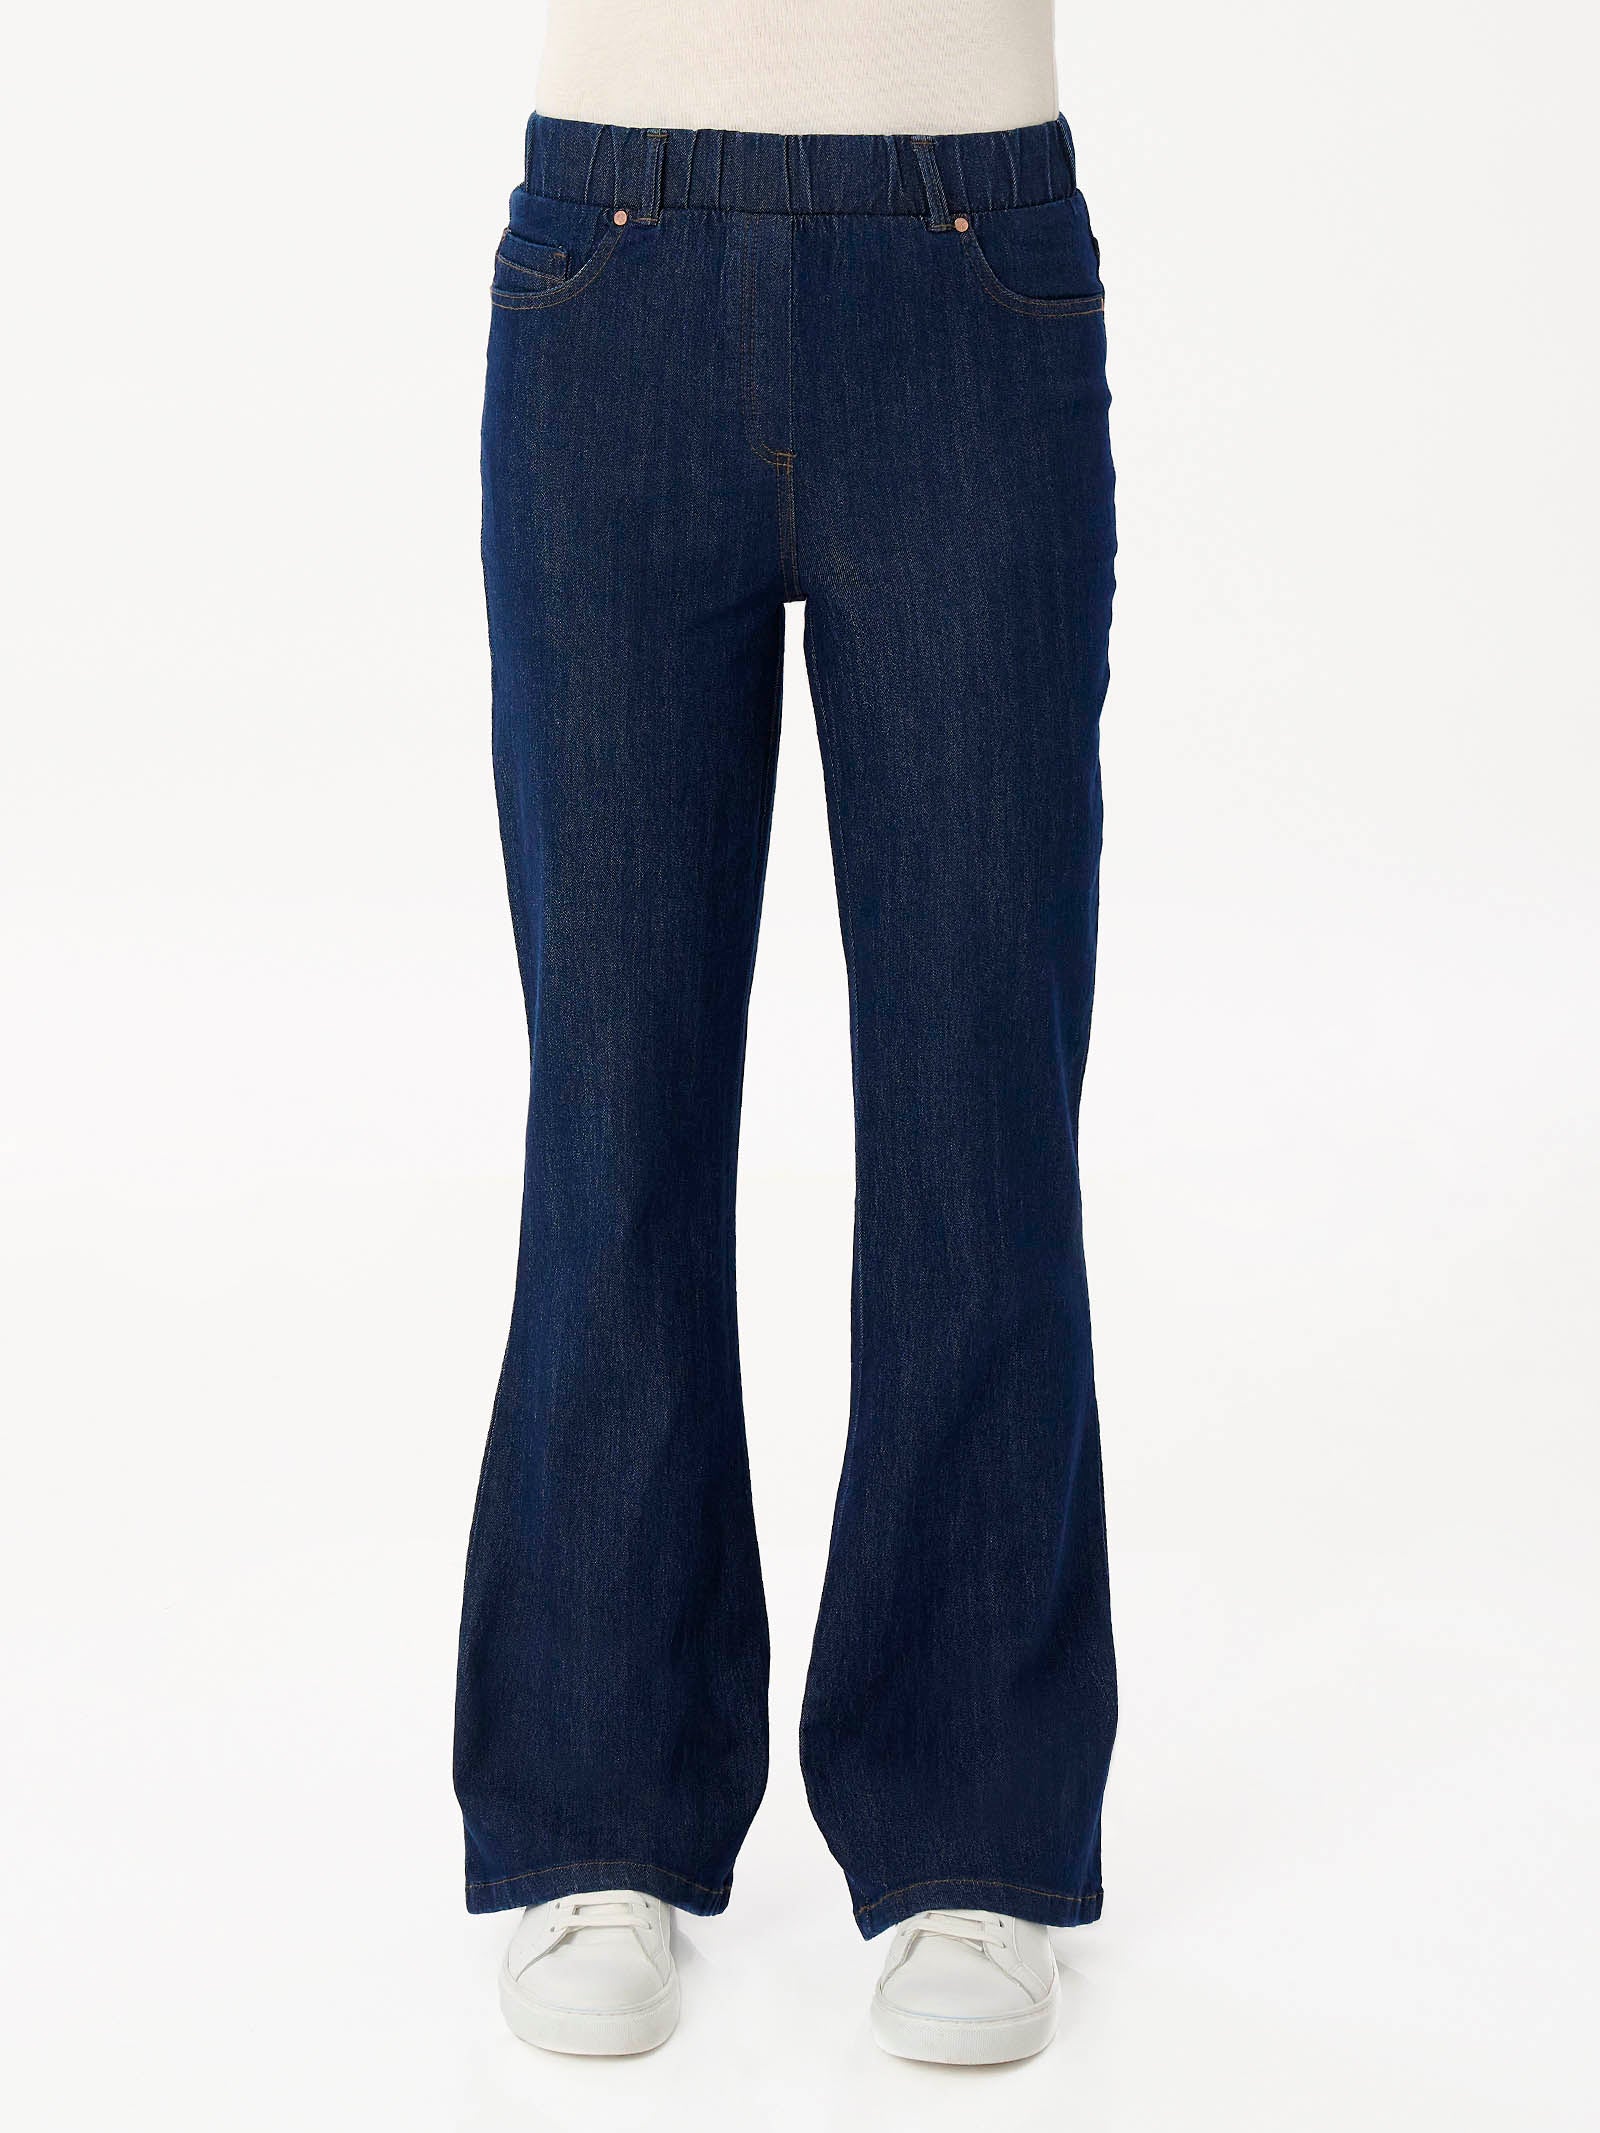 Jeans Flare in tessuto 4 Seasons Denim  -  - Ragno